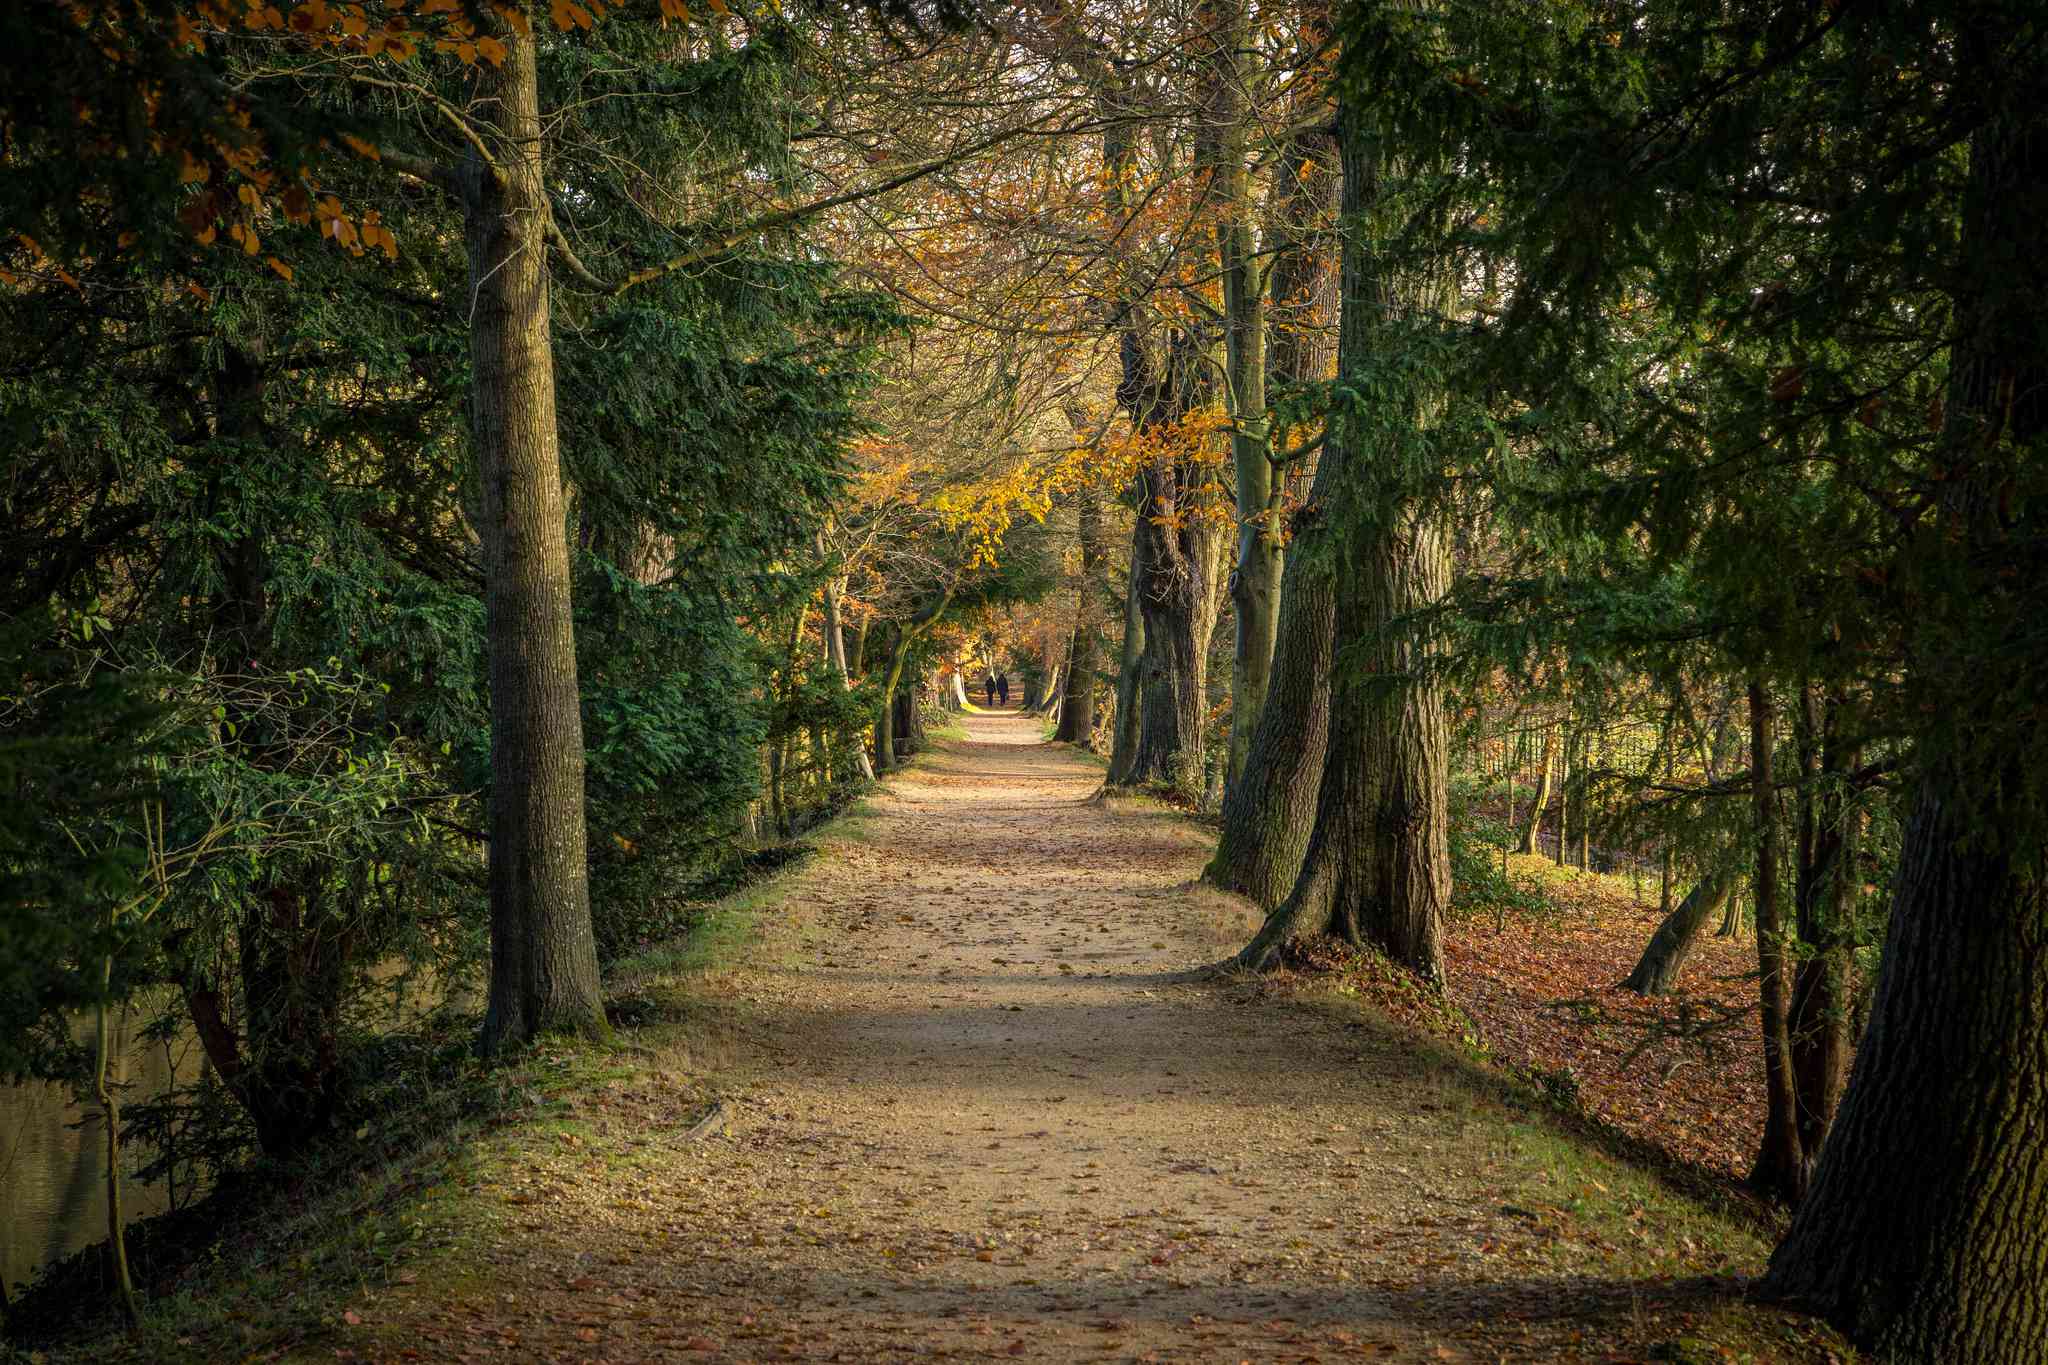 un camino arbolado cubierto de hojas con árboles de hojas verdes, amarillas y rojas a ambos lados del camino